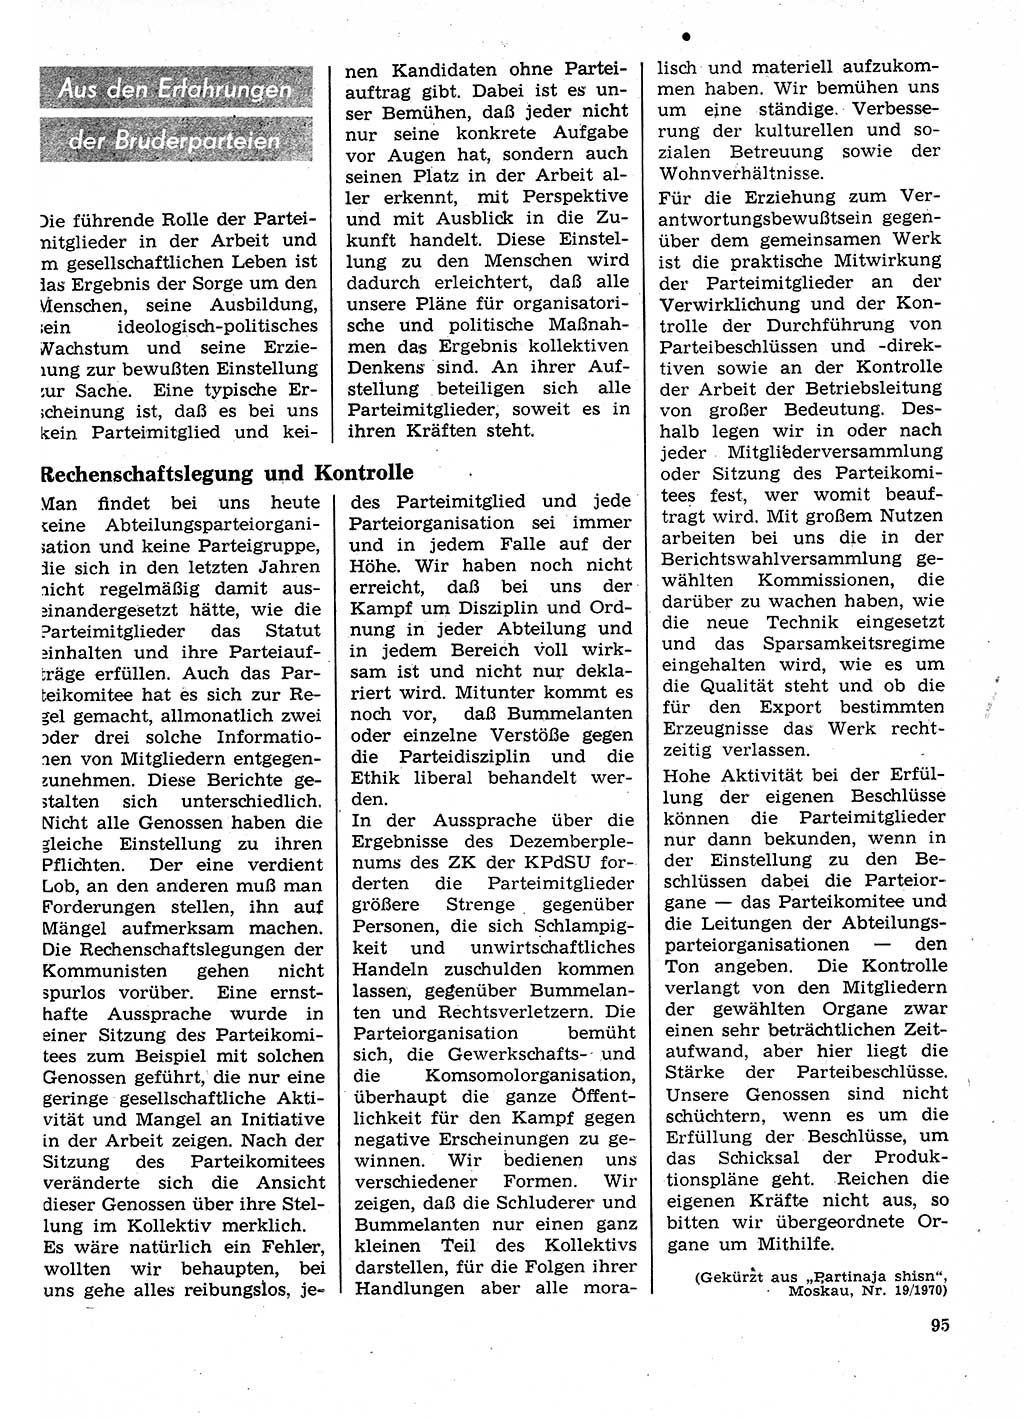 Neuer Weg (NW), Organ des Zentralkomitees (ZK) der SED (Sozialistische Einheitspartei Deutschlands) für Fragen des Parteilebens, 26. Jahrgang [Deutsche Demokratische Republik (DDR)] 1971, Seite 95 (NW ZK SED DDR 1971, S. 95)